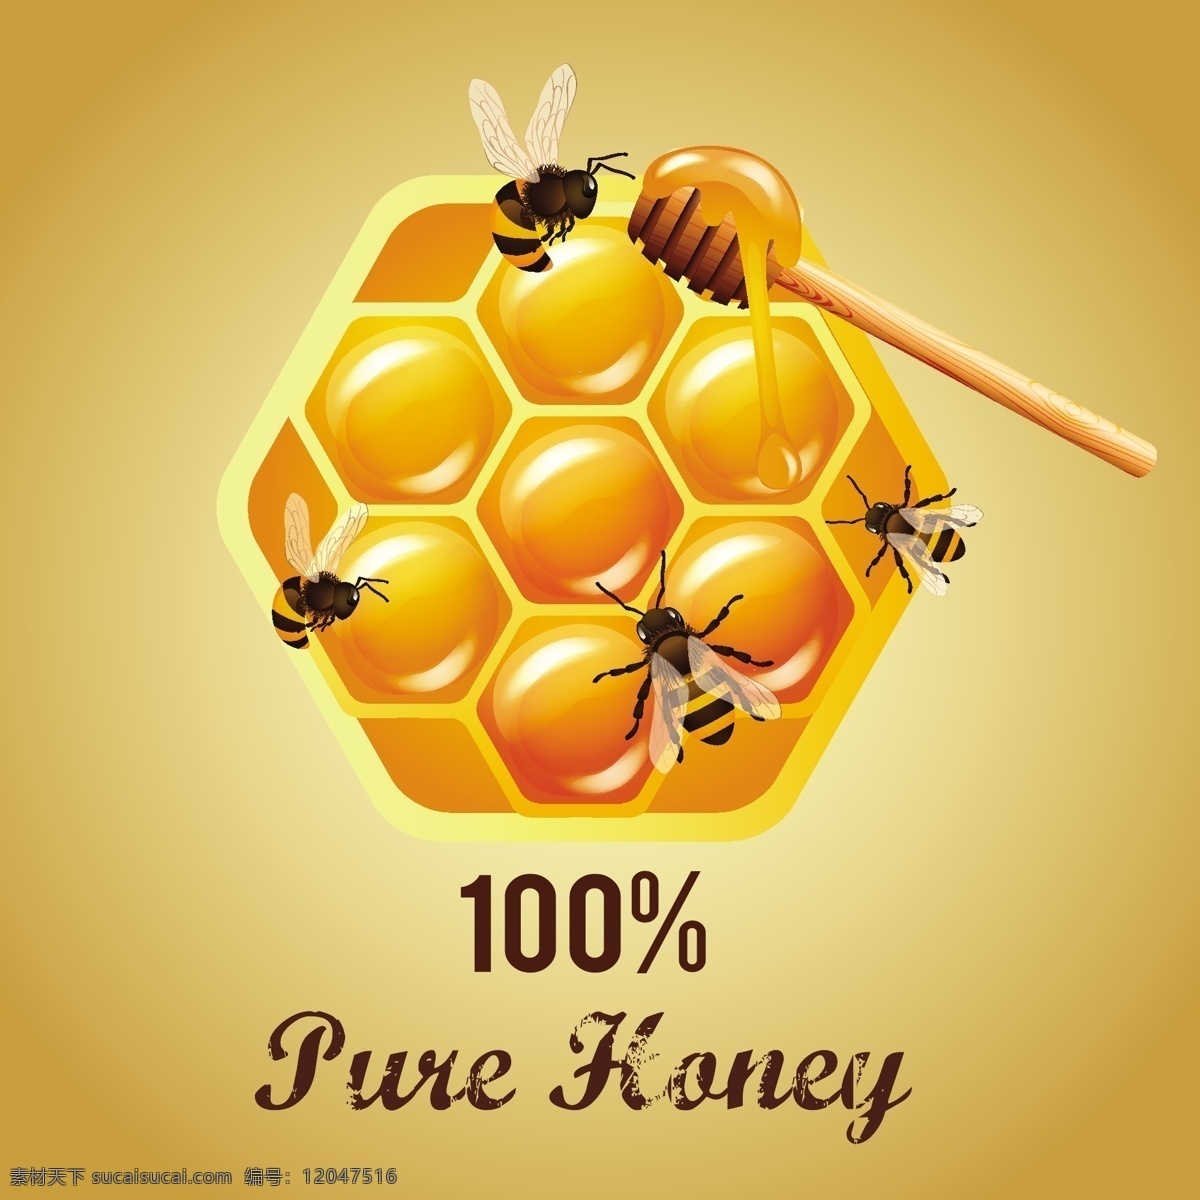 自然 蜂蜜 促销 广告 蜜蜂 蜂窝 几何蜂窝 黄色蜂蜜 自然蜂蜜 矢量背景